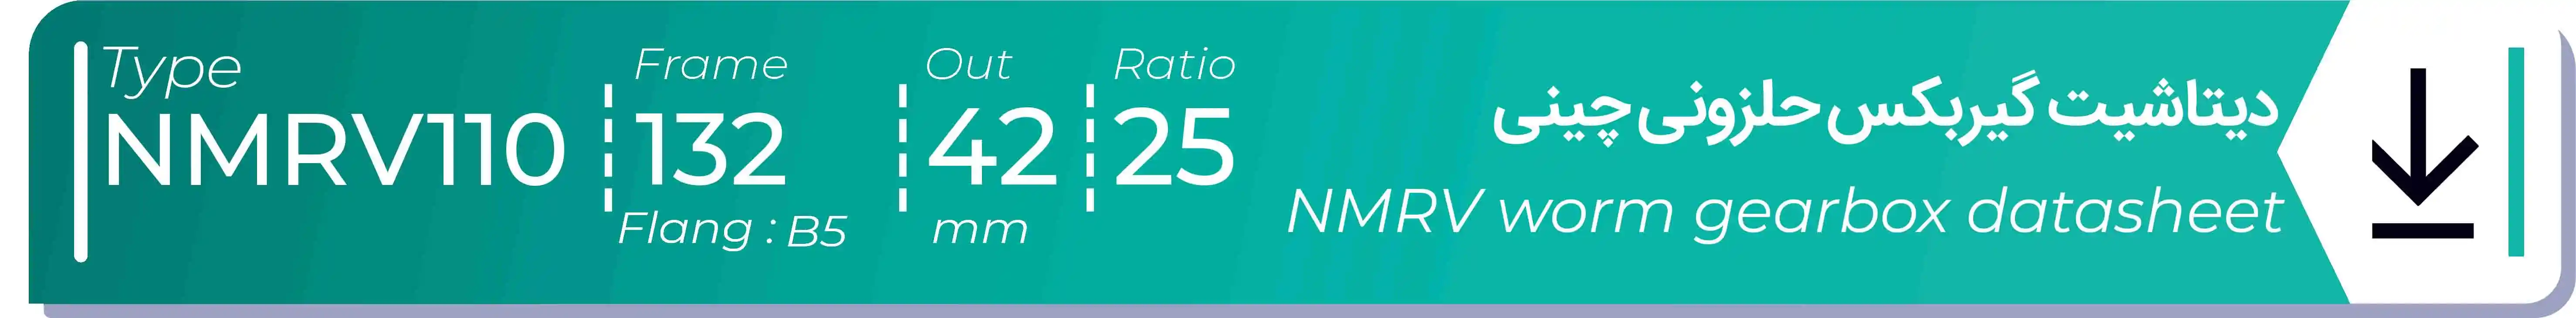  دیتاشیت و مشخصات فنی گیربکس حلزونی چینی   NMRV110  -  با خروجی 42- میلی متر و نسبت25 و فریم 132